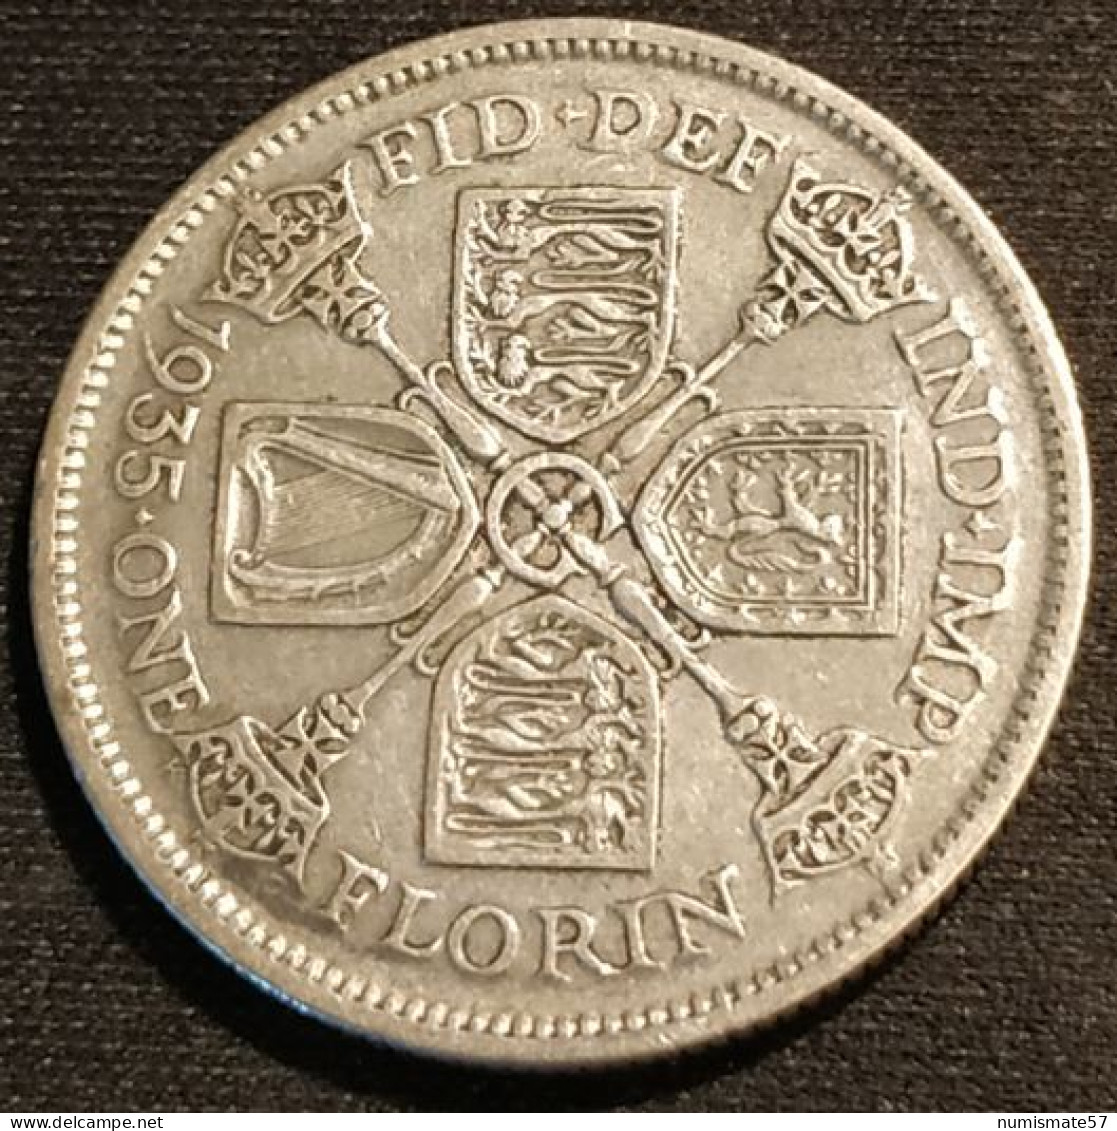 GRANDE BRETAGNE - 1 FLORIN 1935 - George V - Argent - Silver - KM 834 - J. 1 Florin / 2 Shillings